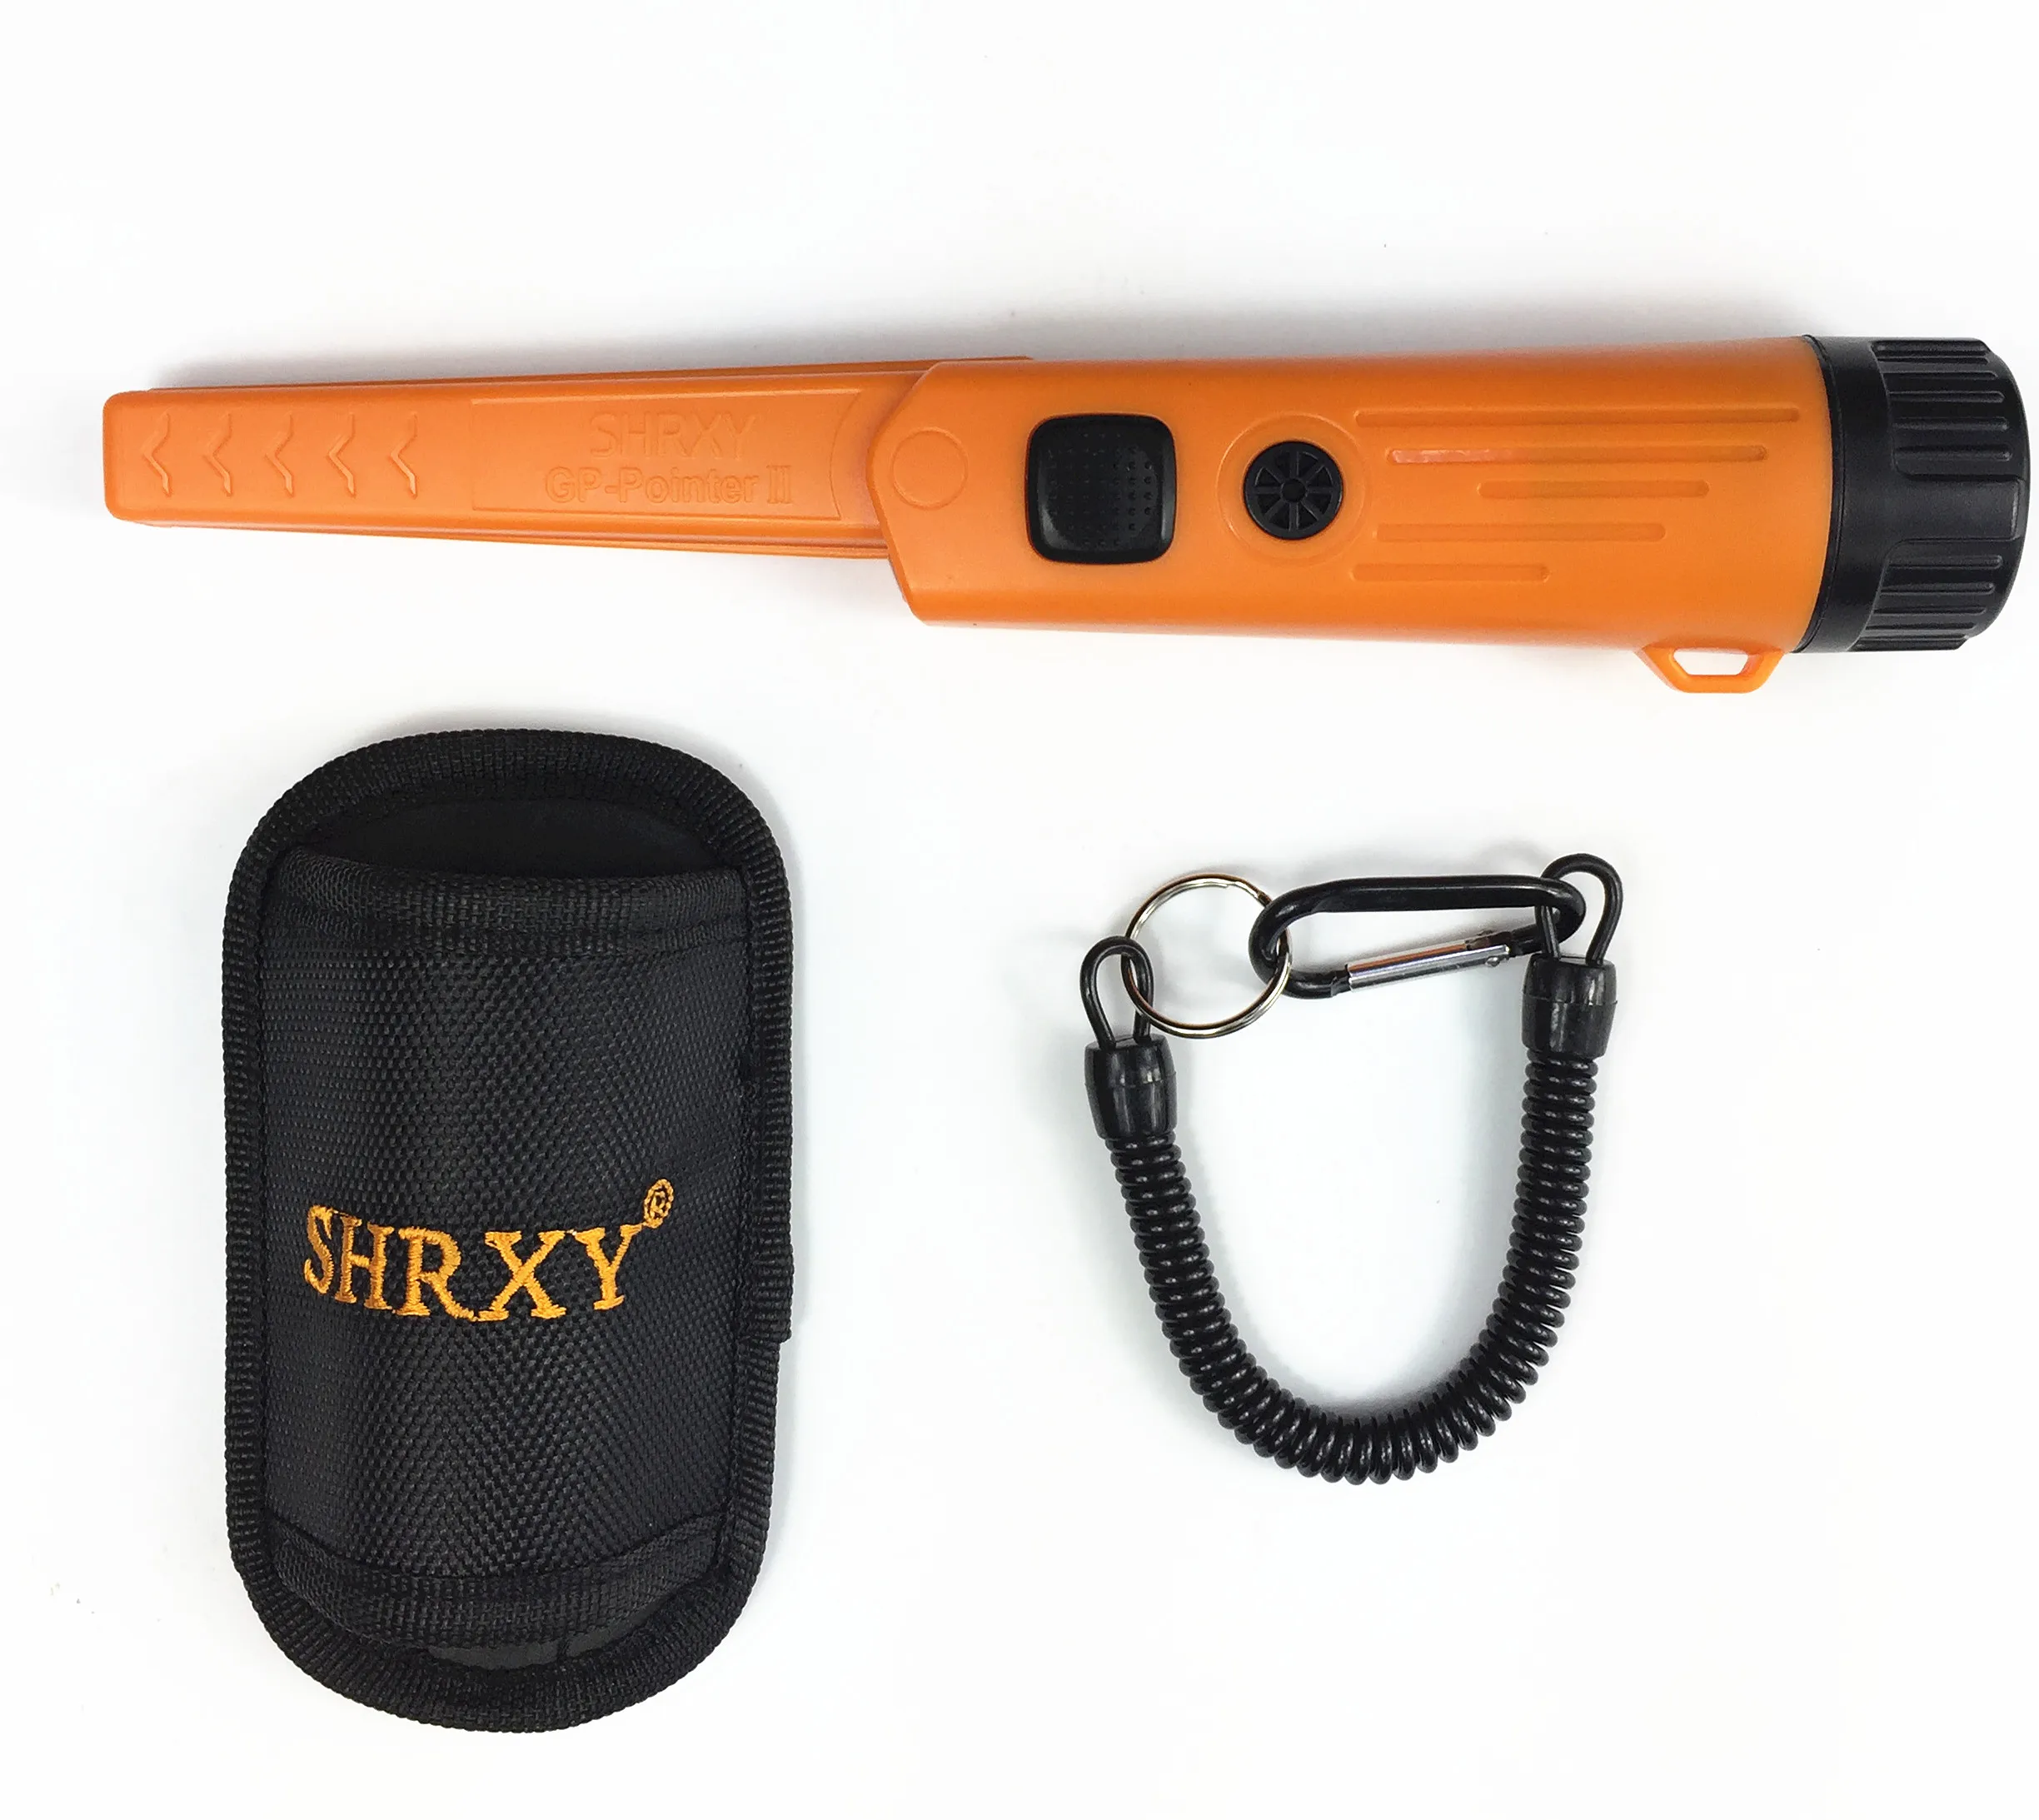 Shrxy Модернизированный Pro выявлением Ручной металлодетектор TRX gp-pointer2 Водонепроницаемый указатель детектор металла оранжевый/черный Цвет